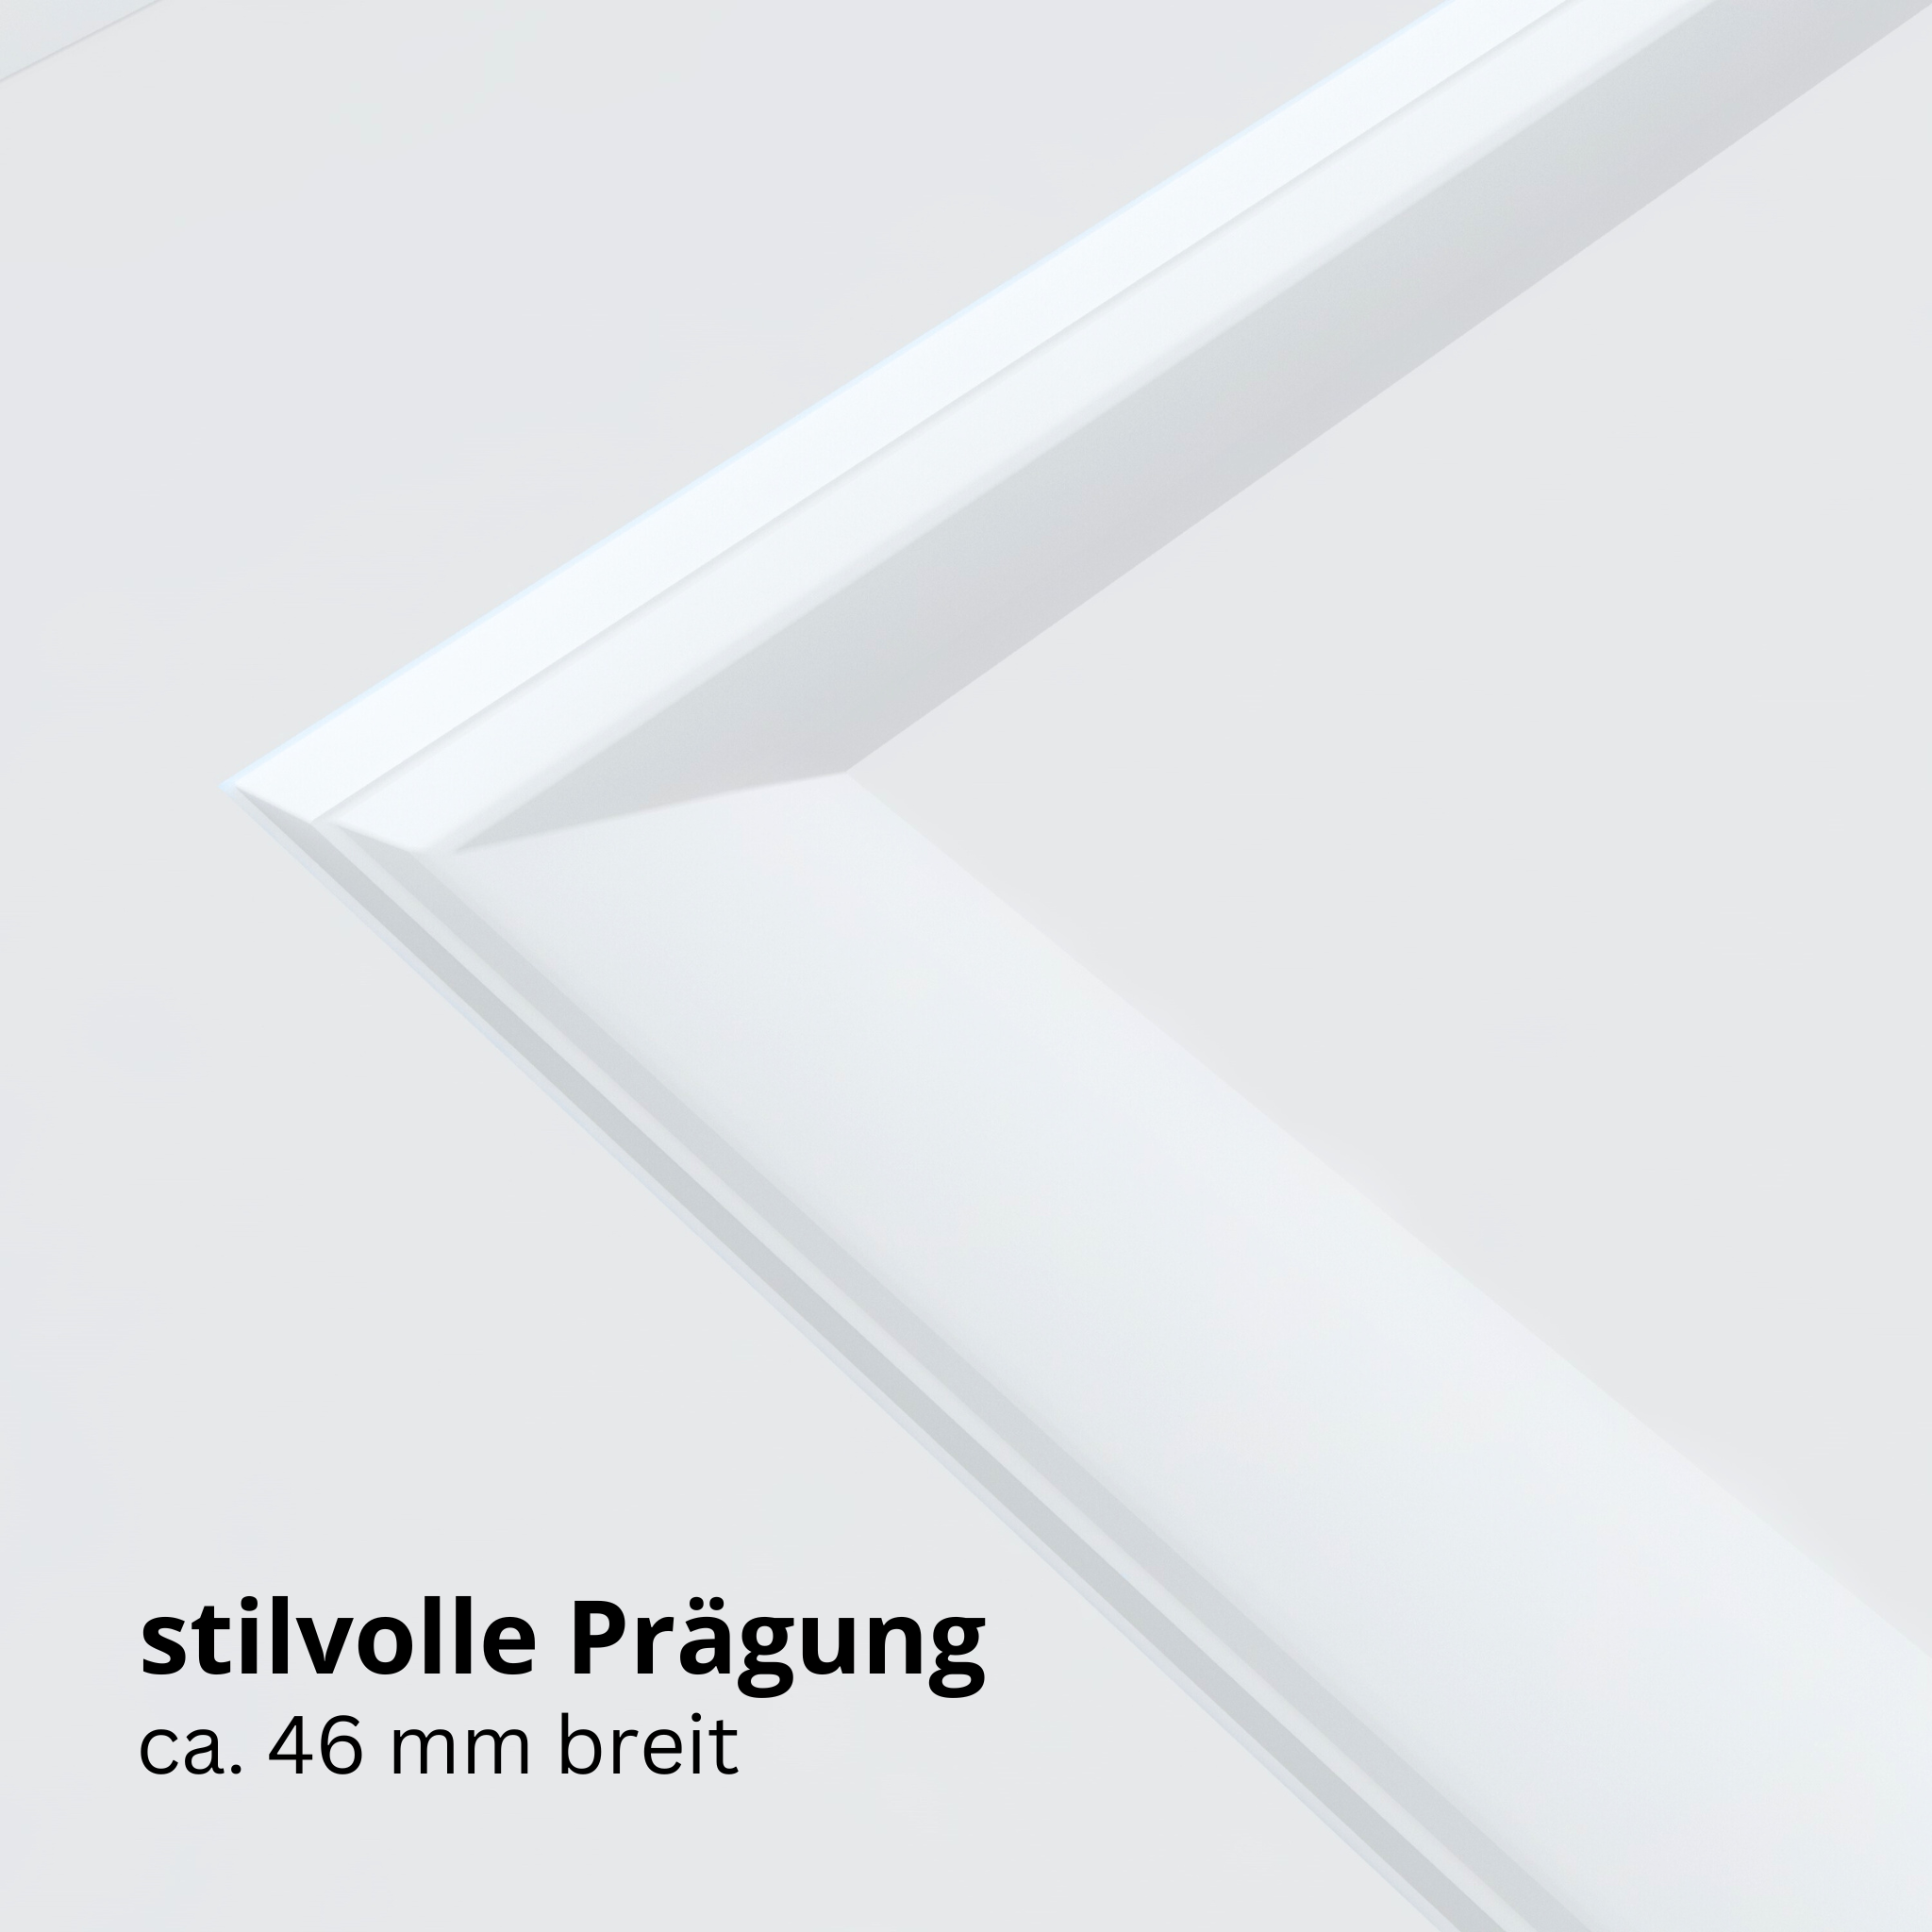 Wohnungseingangstür mit Zarge brillant-weiß 2 Kassetten Designkante SK3 / KK3 - Modell Stiltür K23